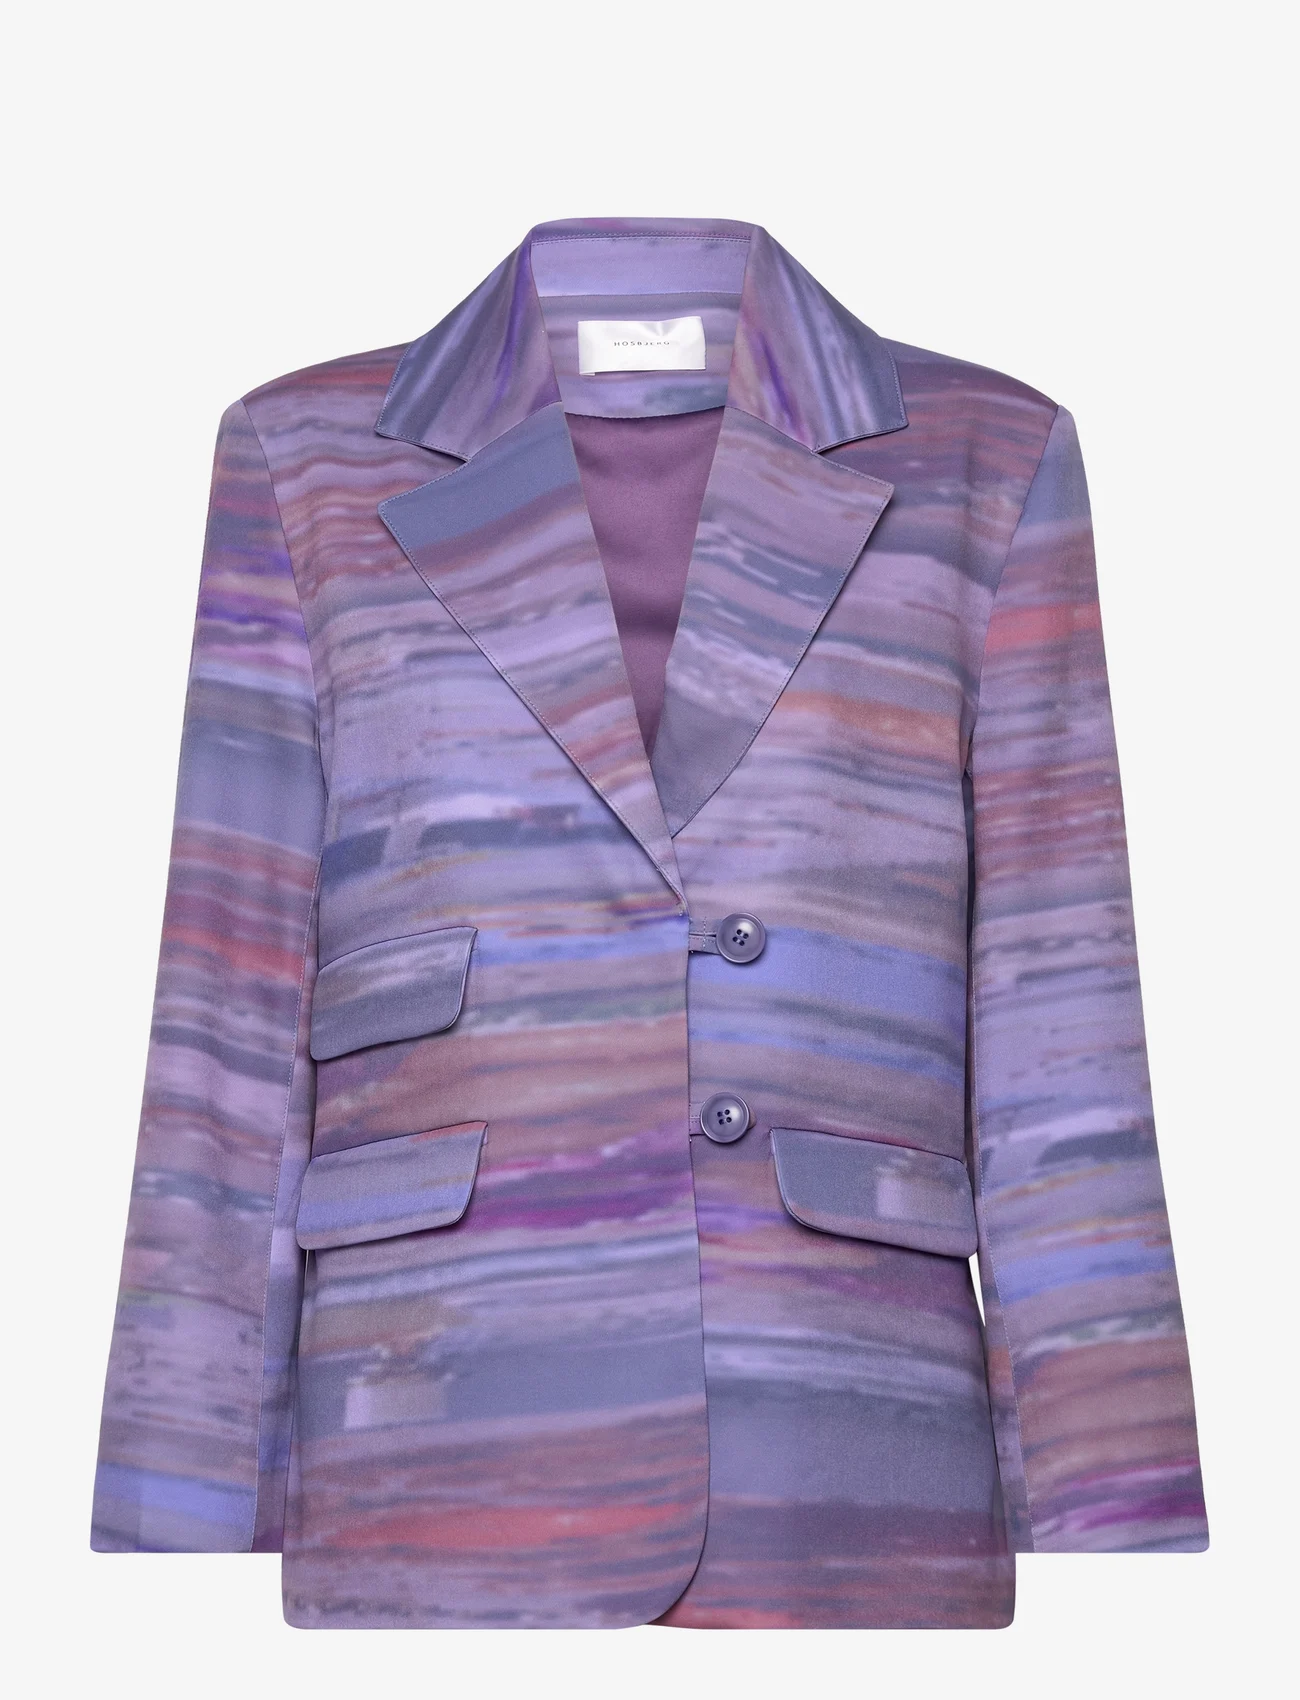 Hosbjerg - Line Adele Blazer - festklær til outlet-priser - abstract dinner purple - 0